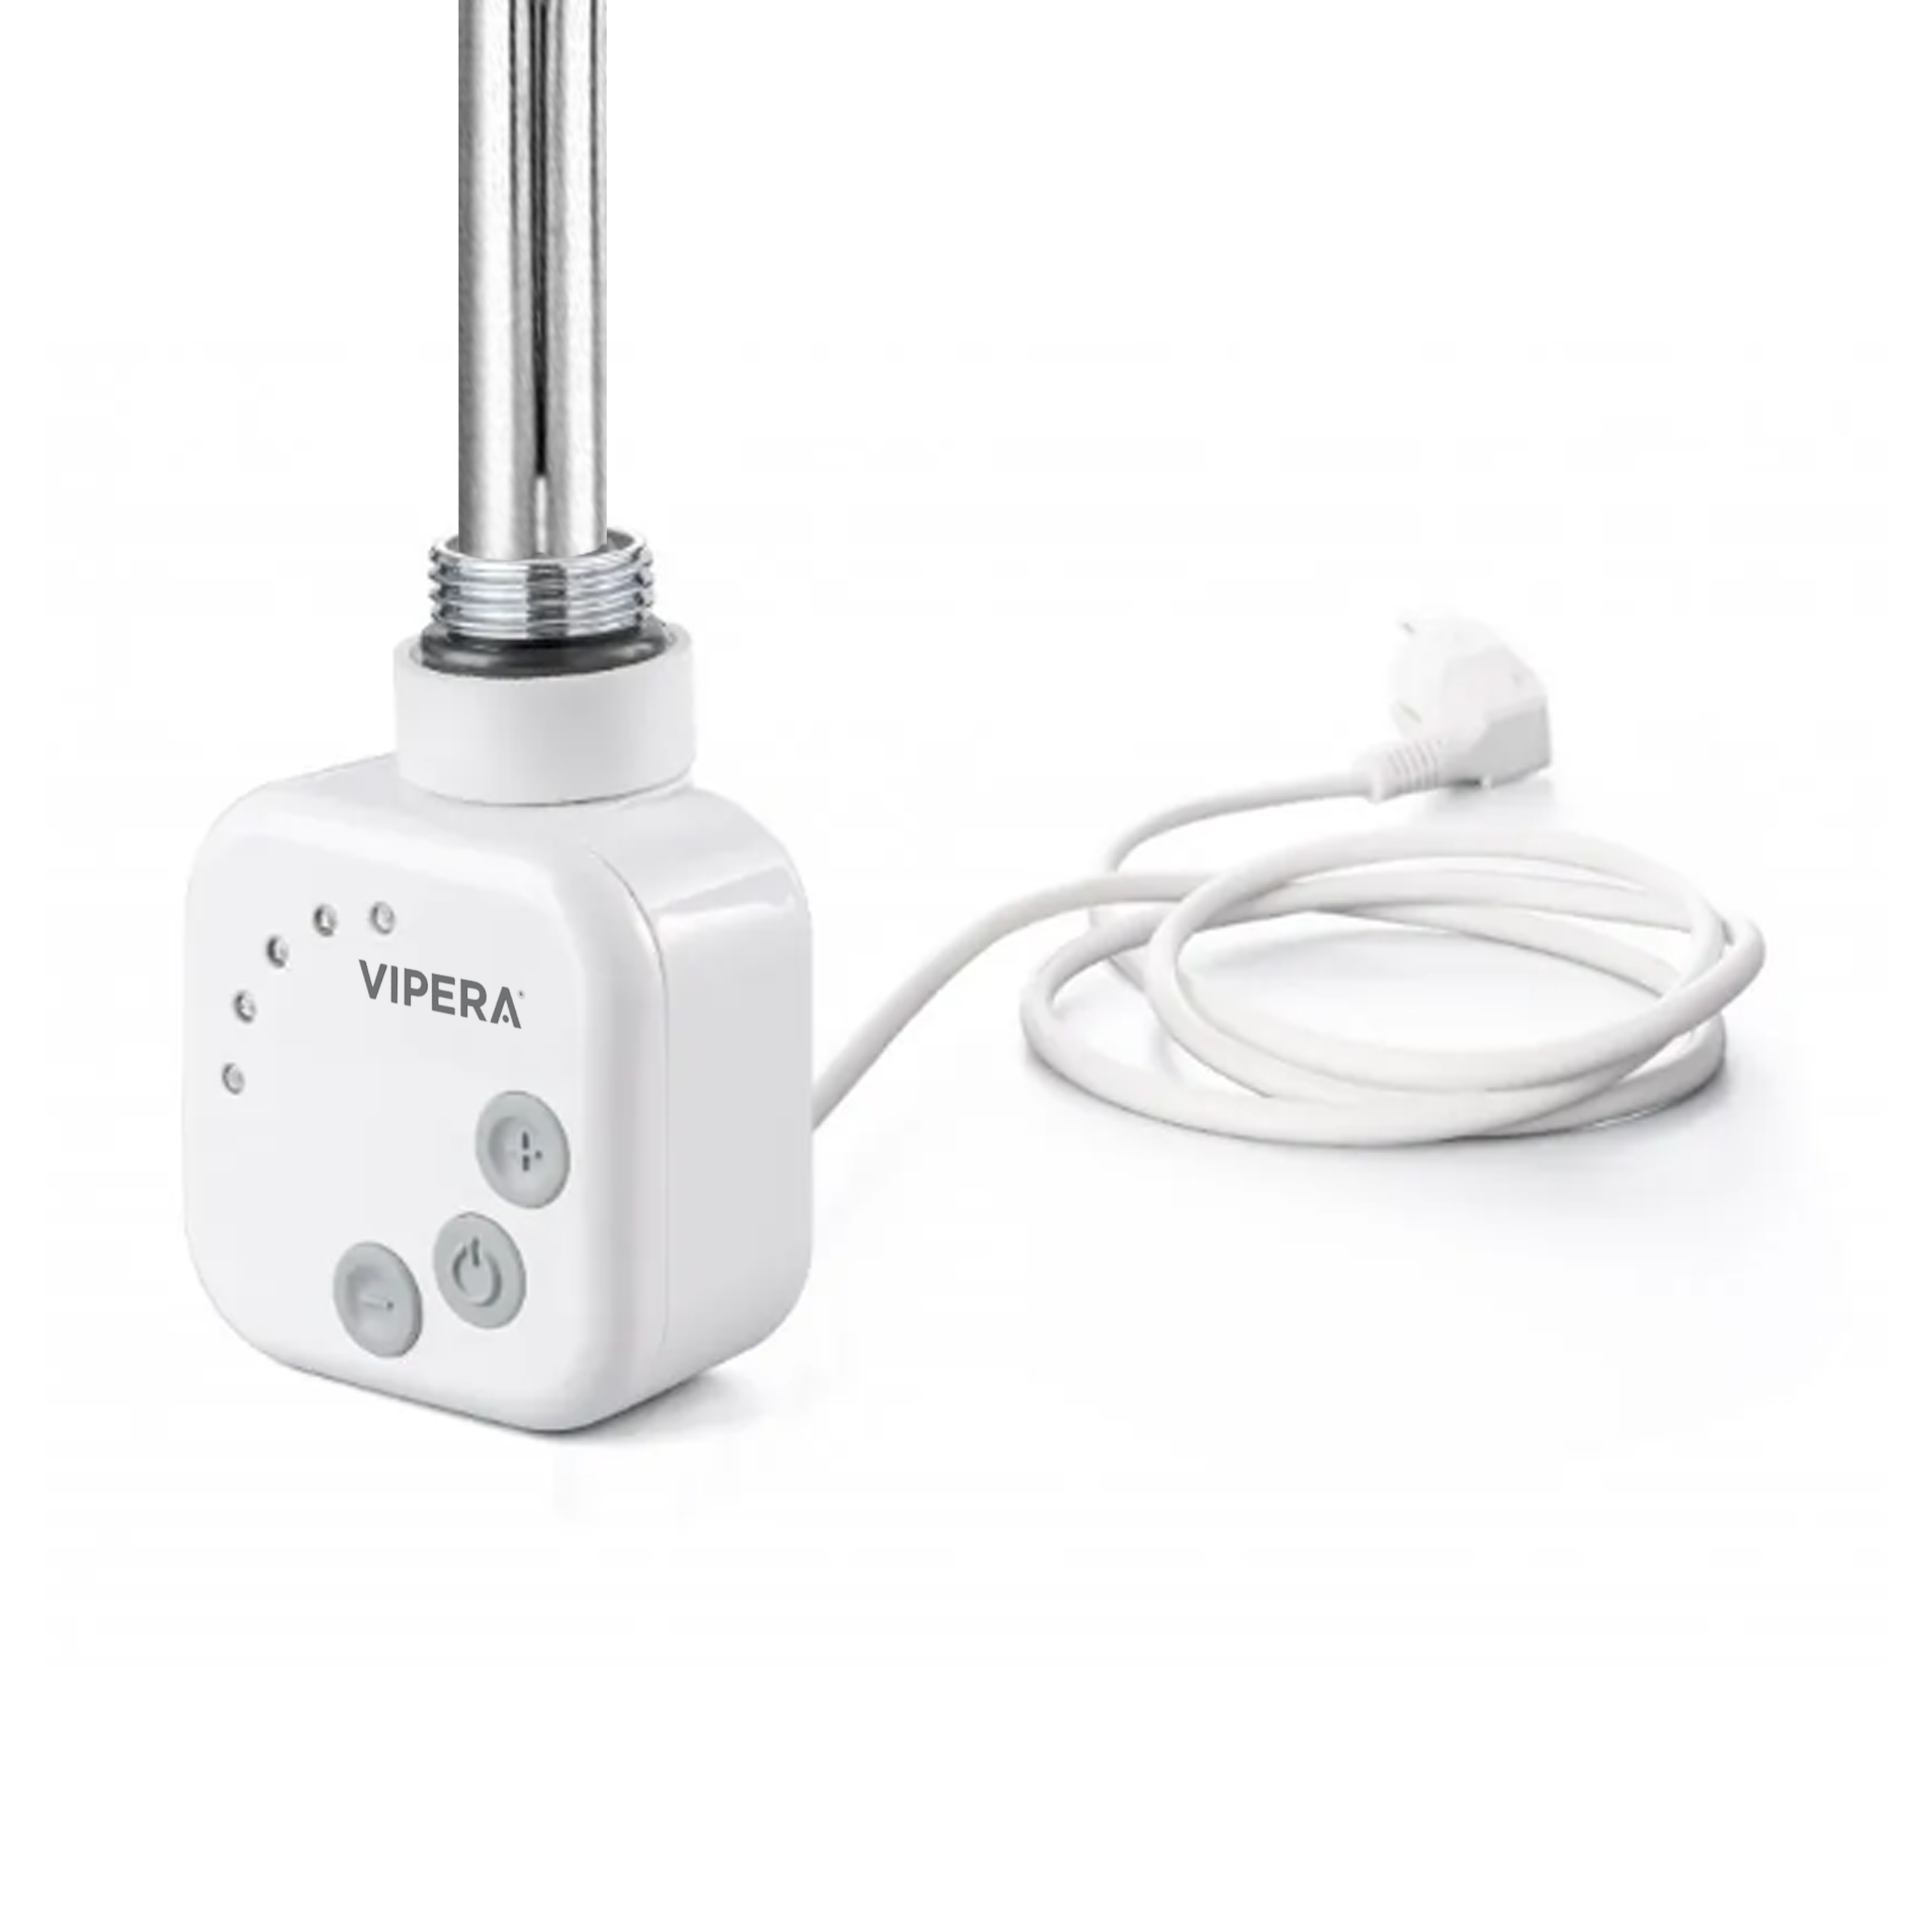 Vipera radiator thermostaat voor elektrische handdoekradiator 1000W analoog wit